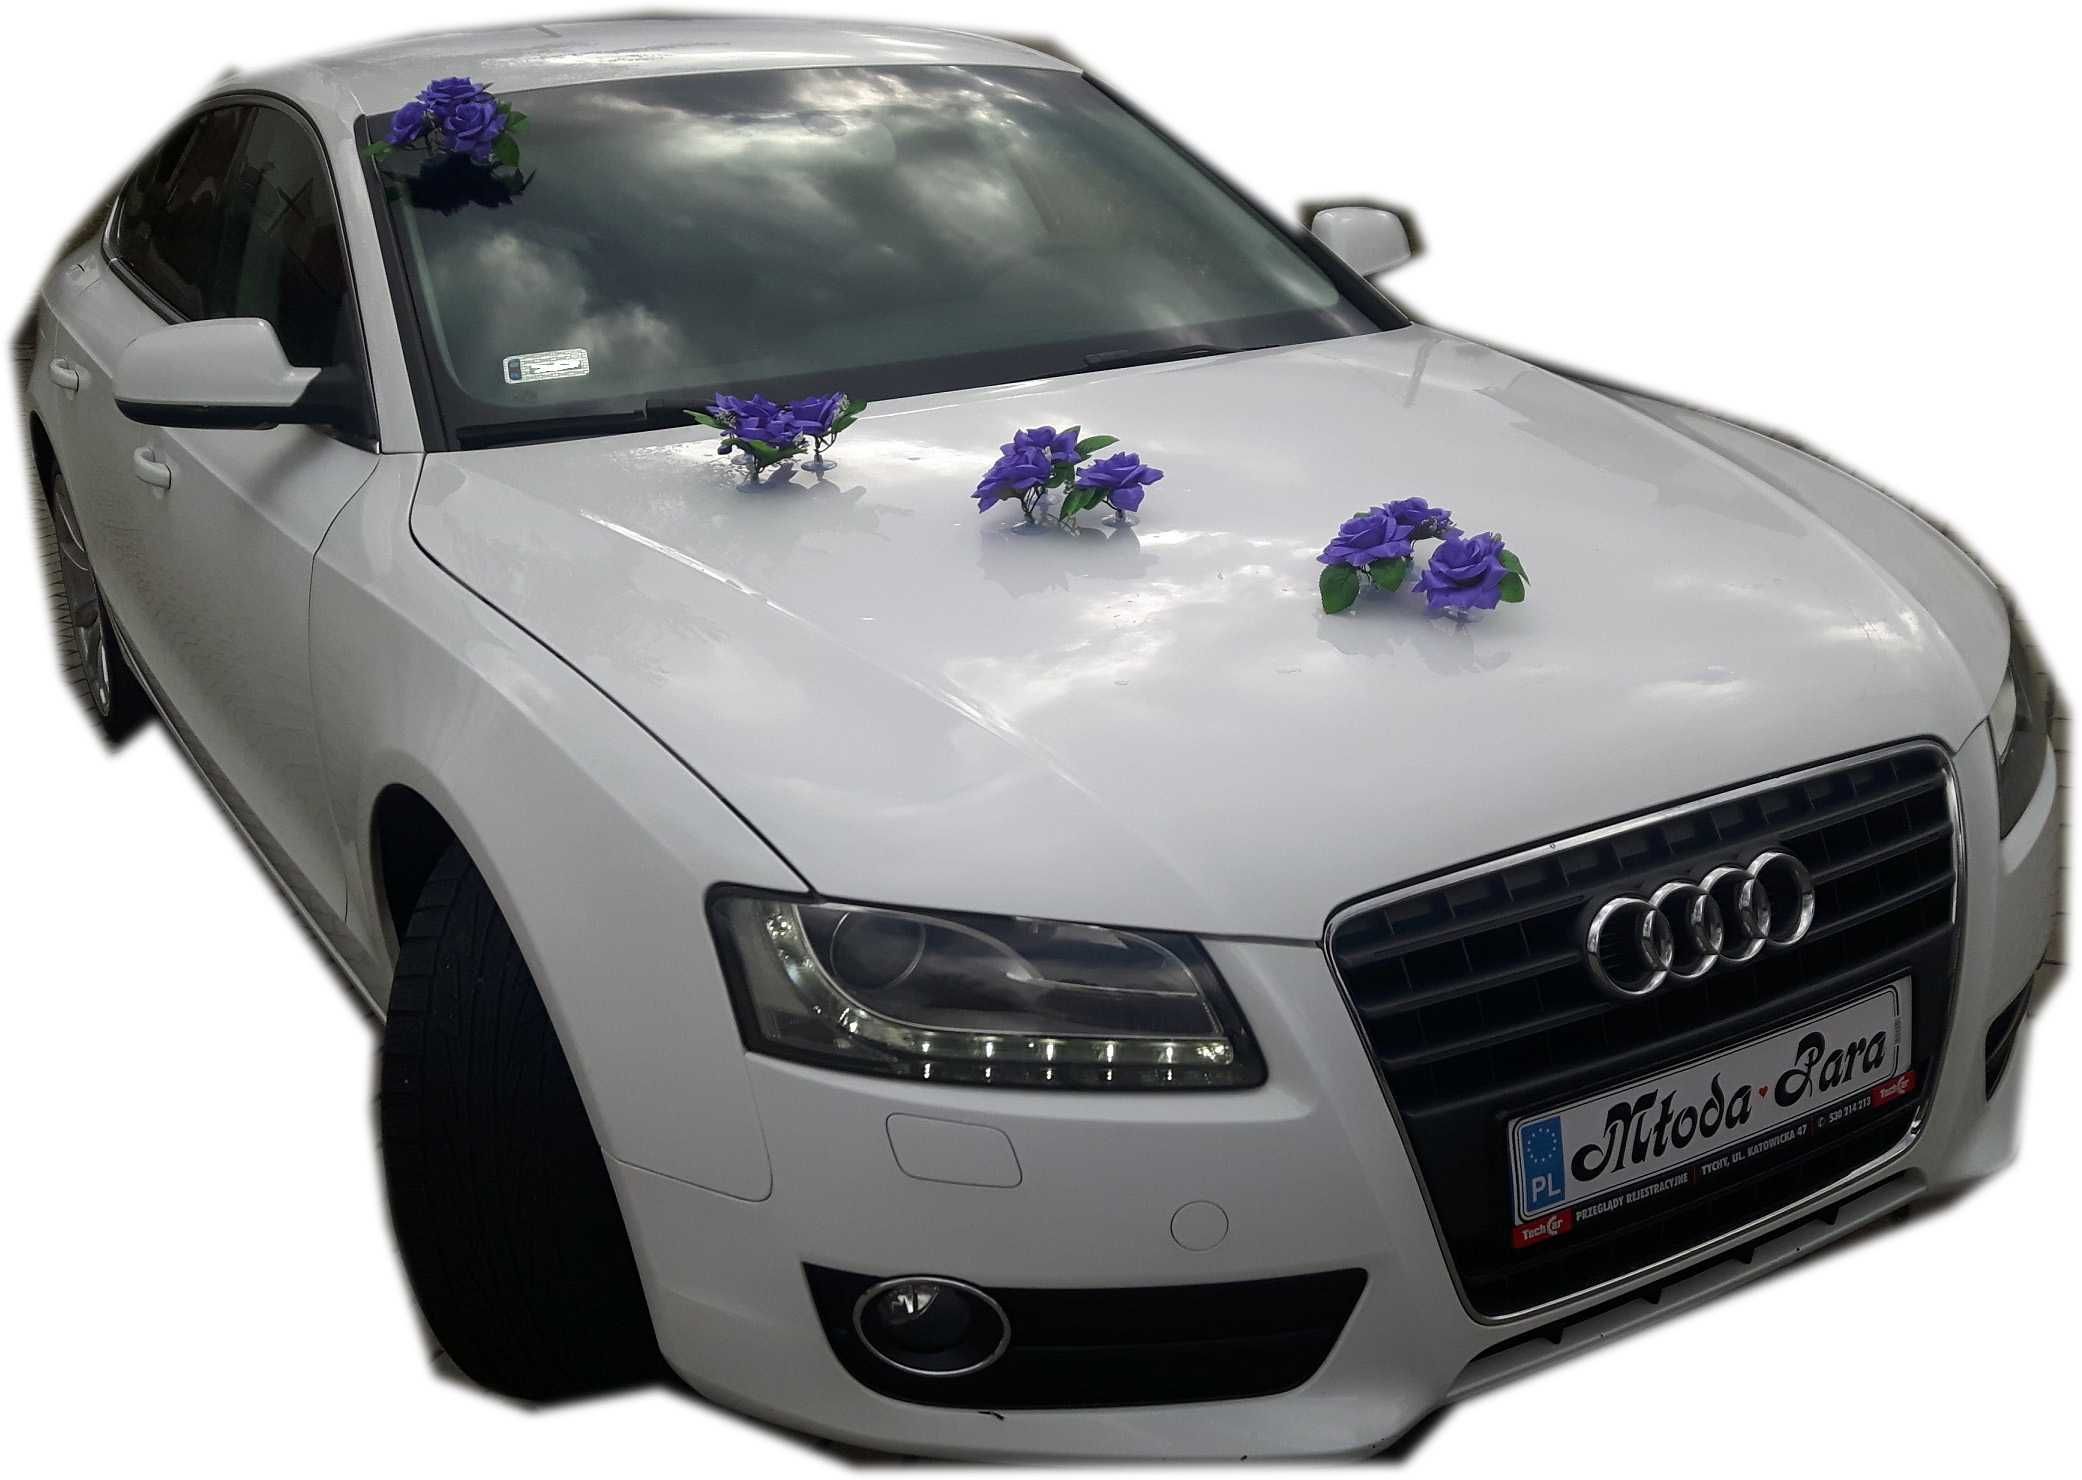 CIEMNY FIOLET Ozdoba na auto samochód do ślubu.Dekoracje 152